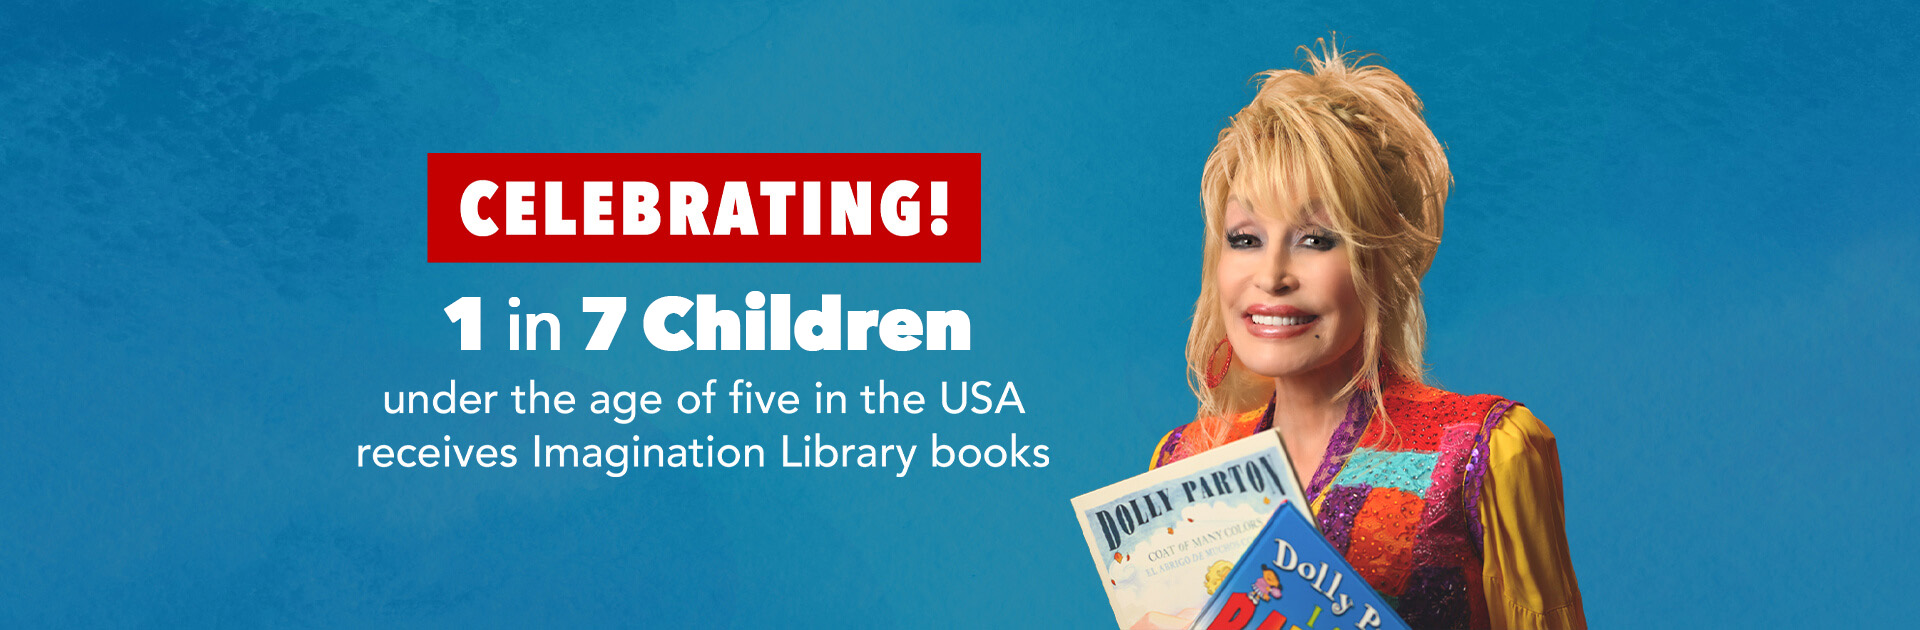 Celebrando ¡1 de cada 7 niños menores de 5 años en los EE. UU. recibe libros de Imagination Library!